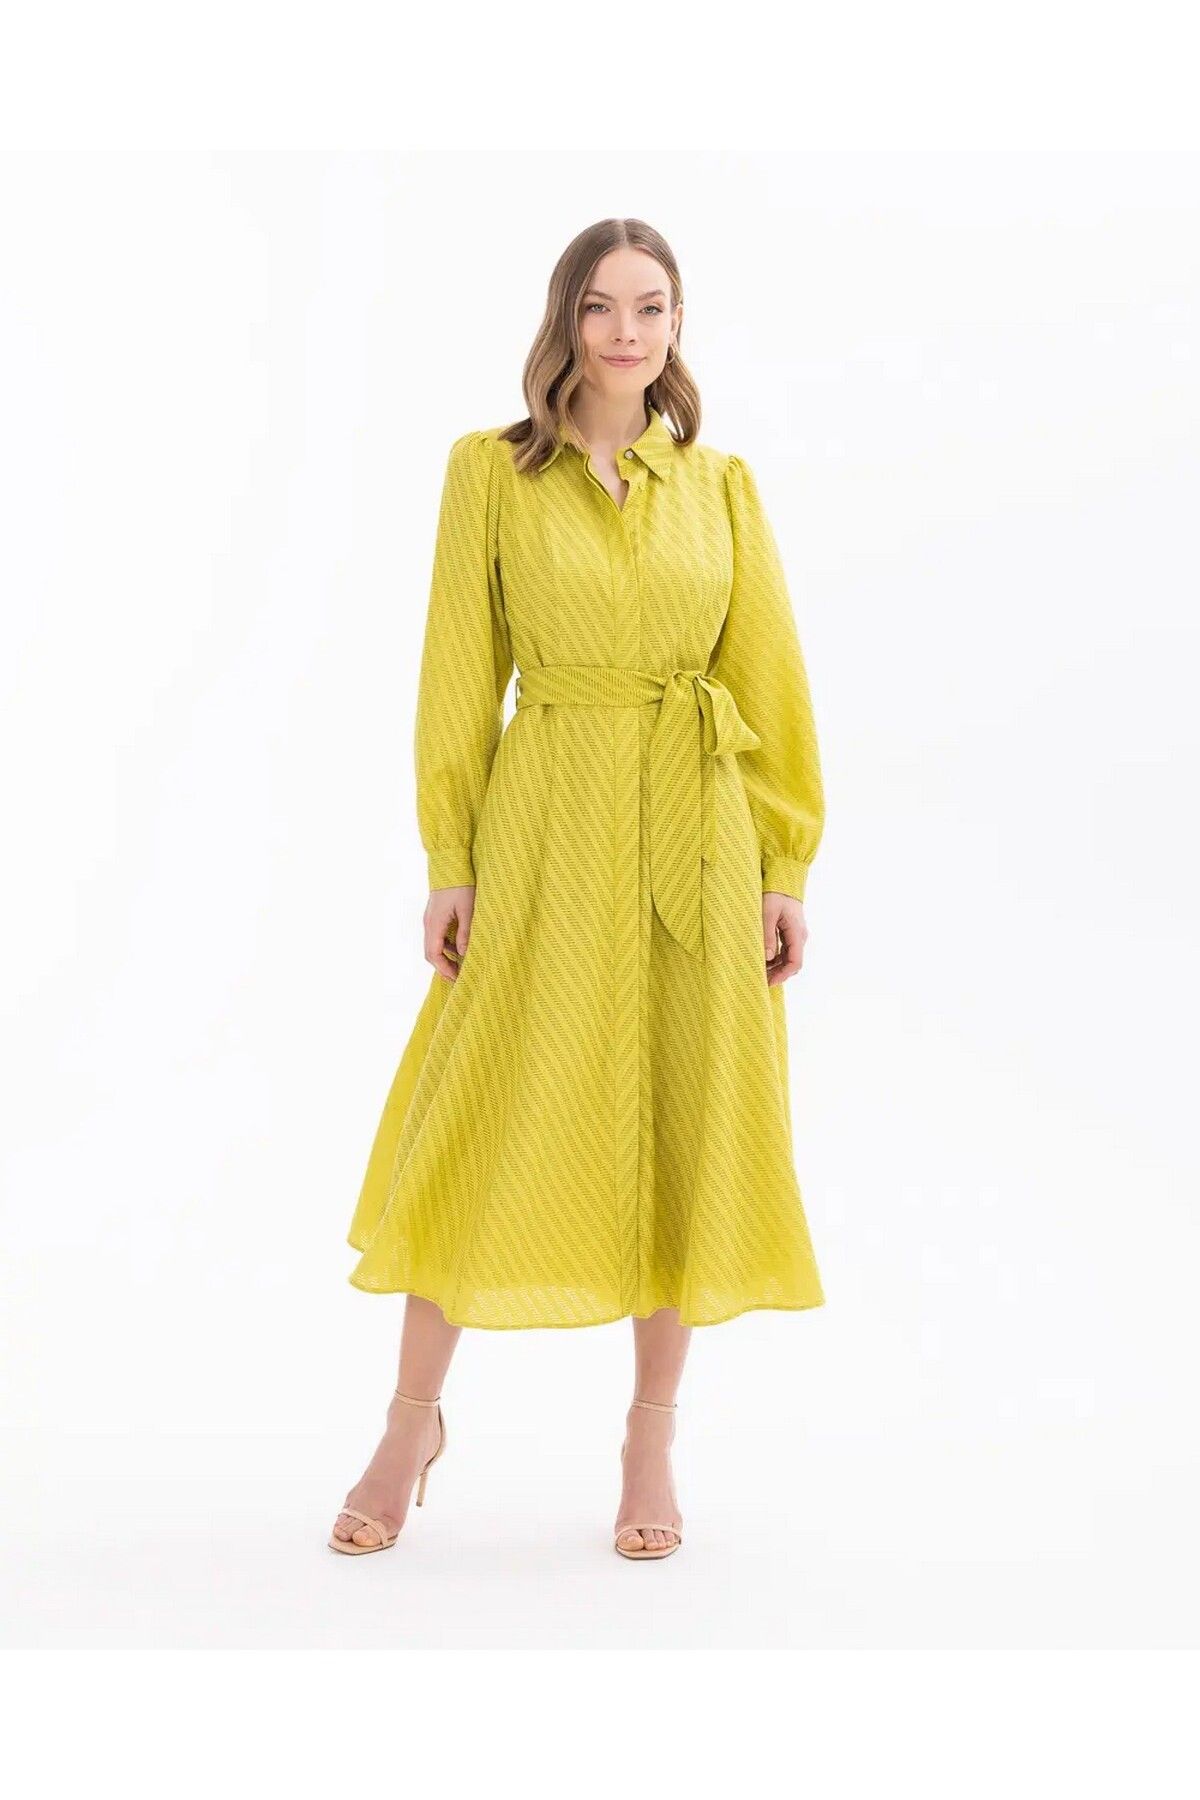 SEÇİL Seçil Gömlek Yaka Bağlama Detaylı Uzun Kollu Yeşil Kadın Astarlı Elbise 10242104001028